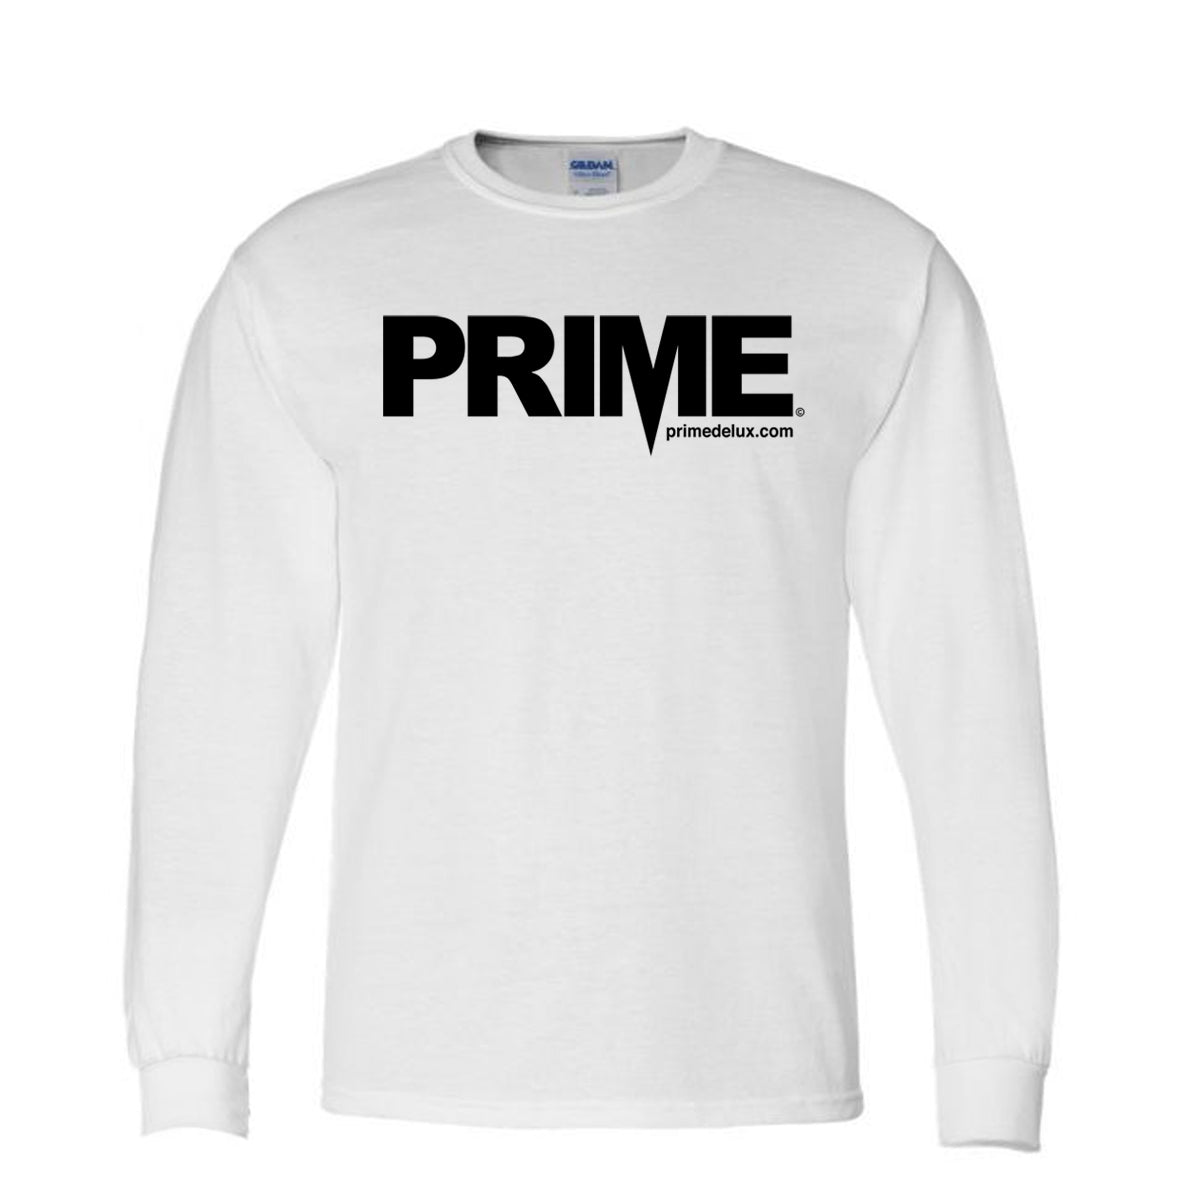 Prime Delux OG Logo Kids Long Sleeve T Shirt - White / Black - Prime Delux Store